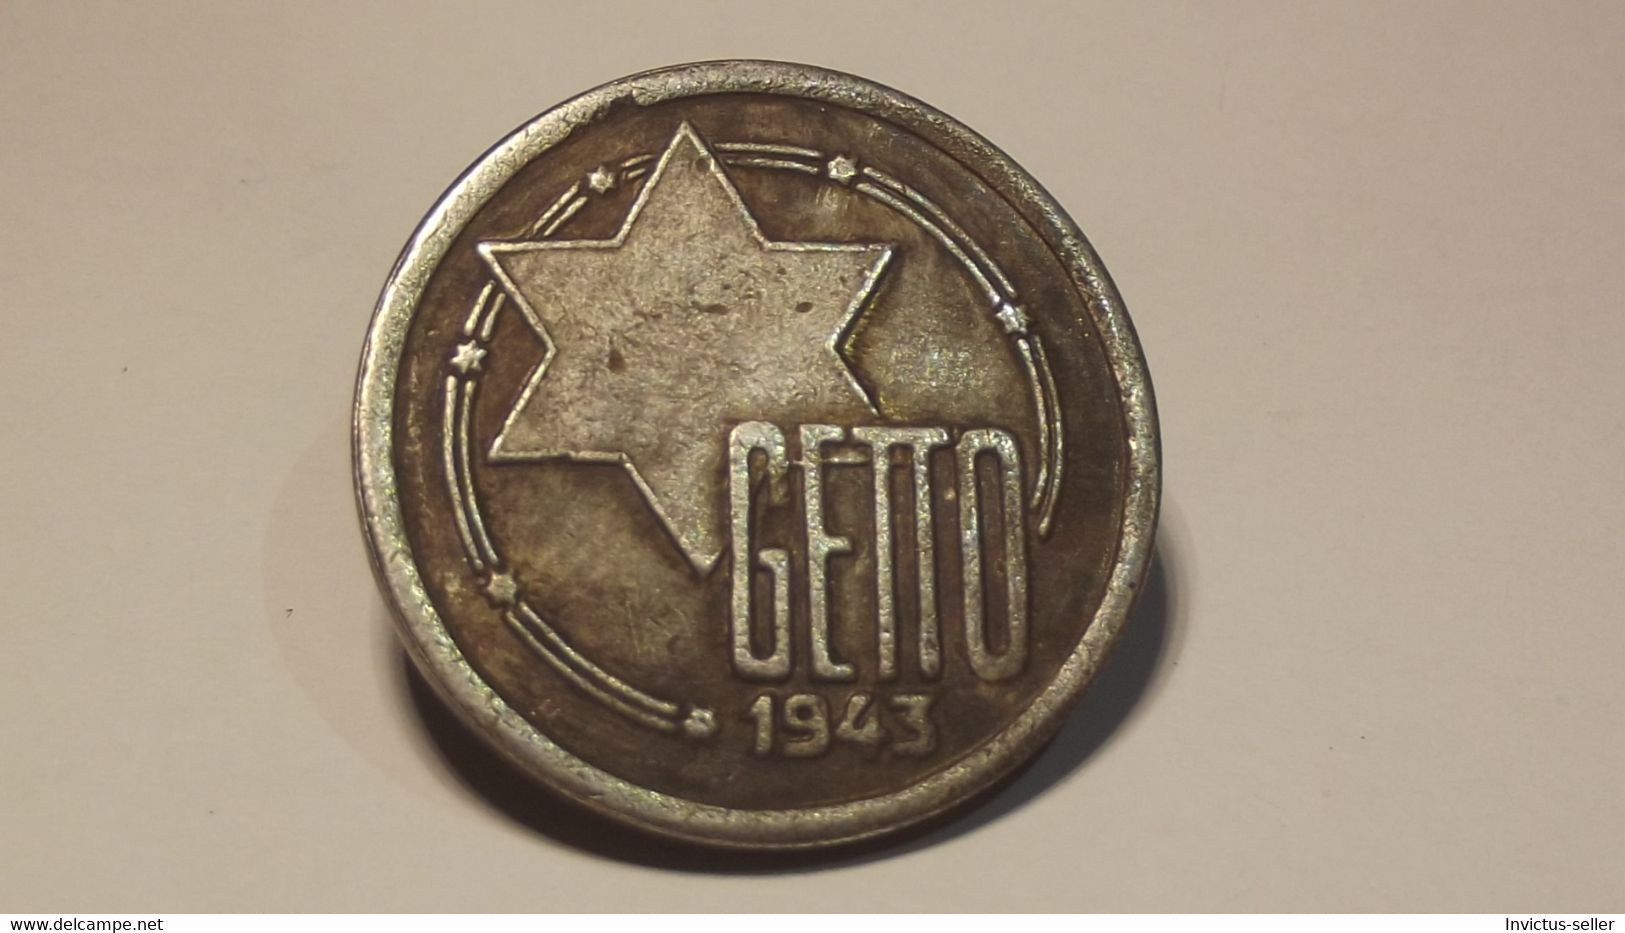 GETTO 20 MARK 1943 LITZMANNSTADT GERMAN COIN MONETA GHETTO EBREI JUDE JUIFE Auschwitz JUDE EBREI GERMANY - Collections